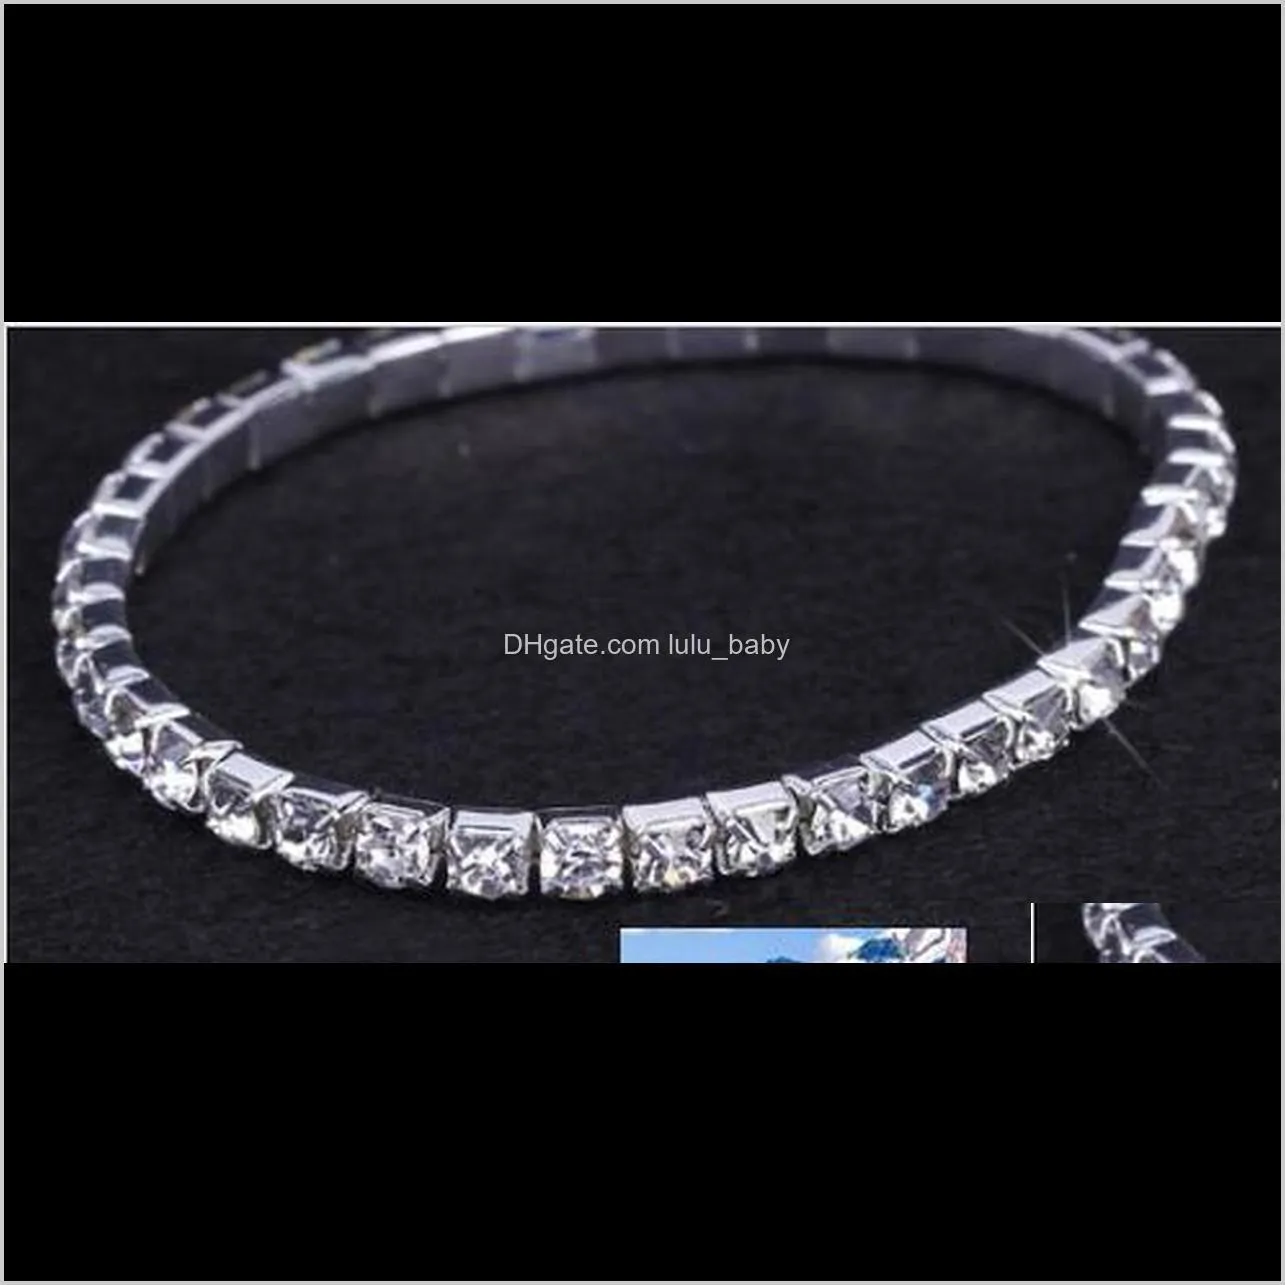 1 row shiny rhinestone elastic lady bangle stretch crystal bangle bracelet fit party prom wedding engagement bridal jewelry gift